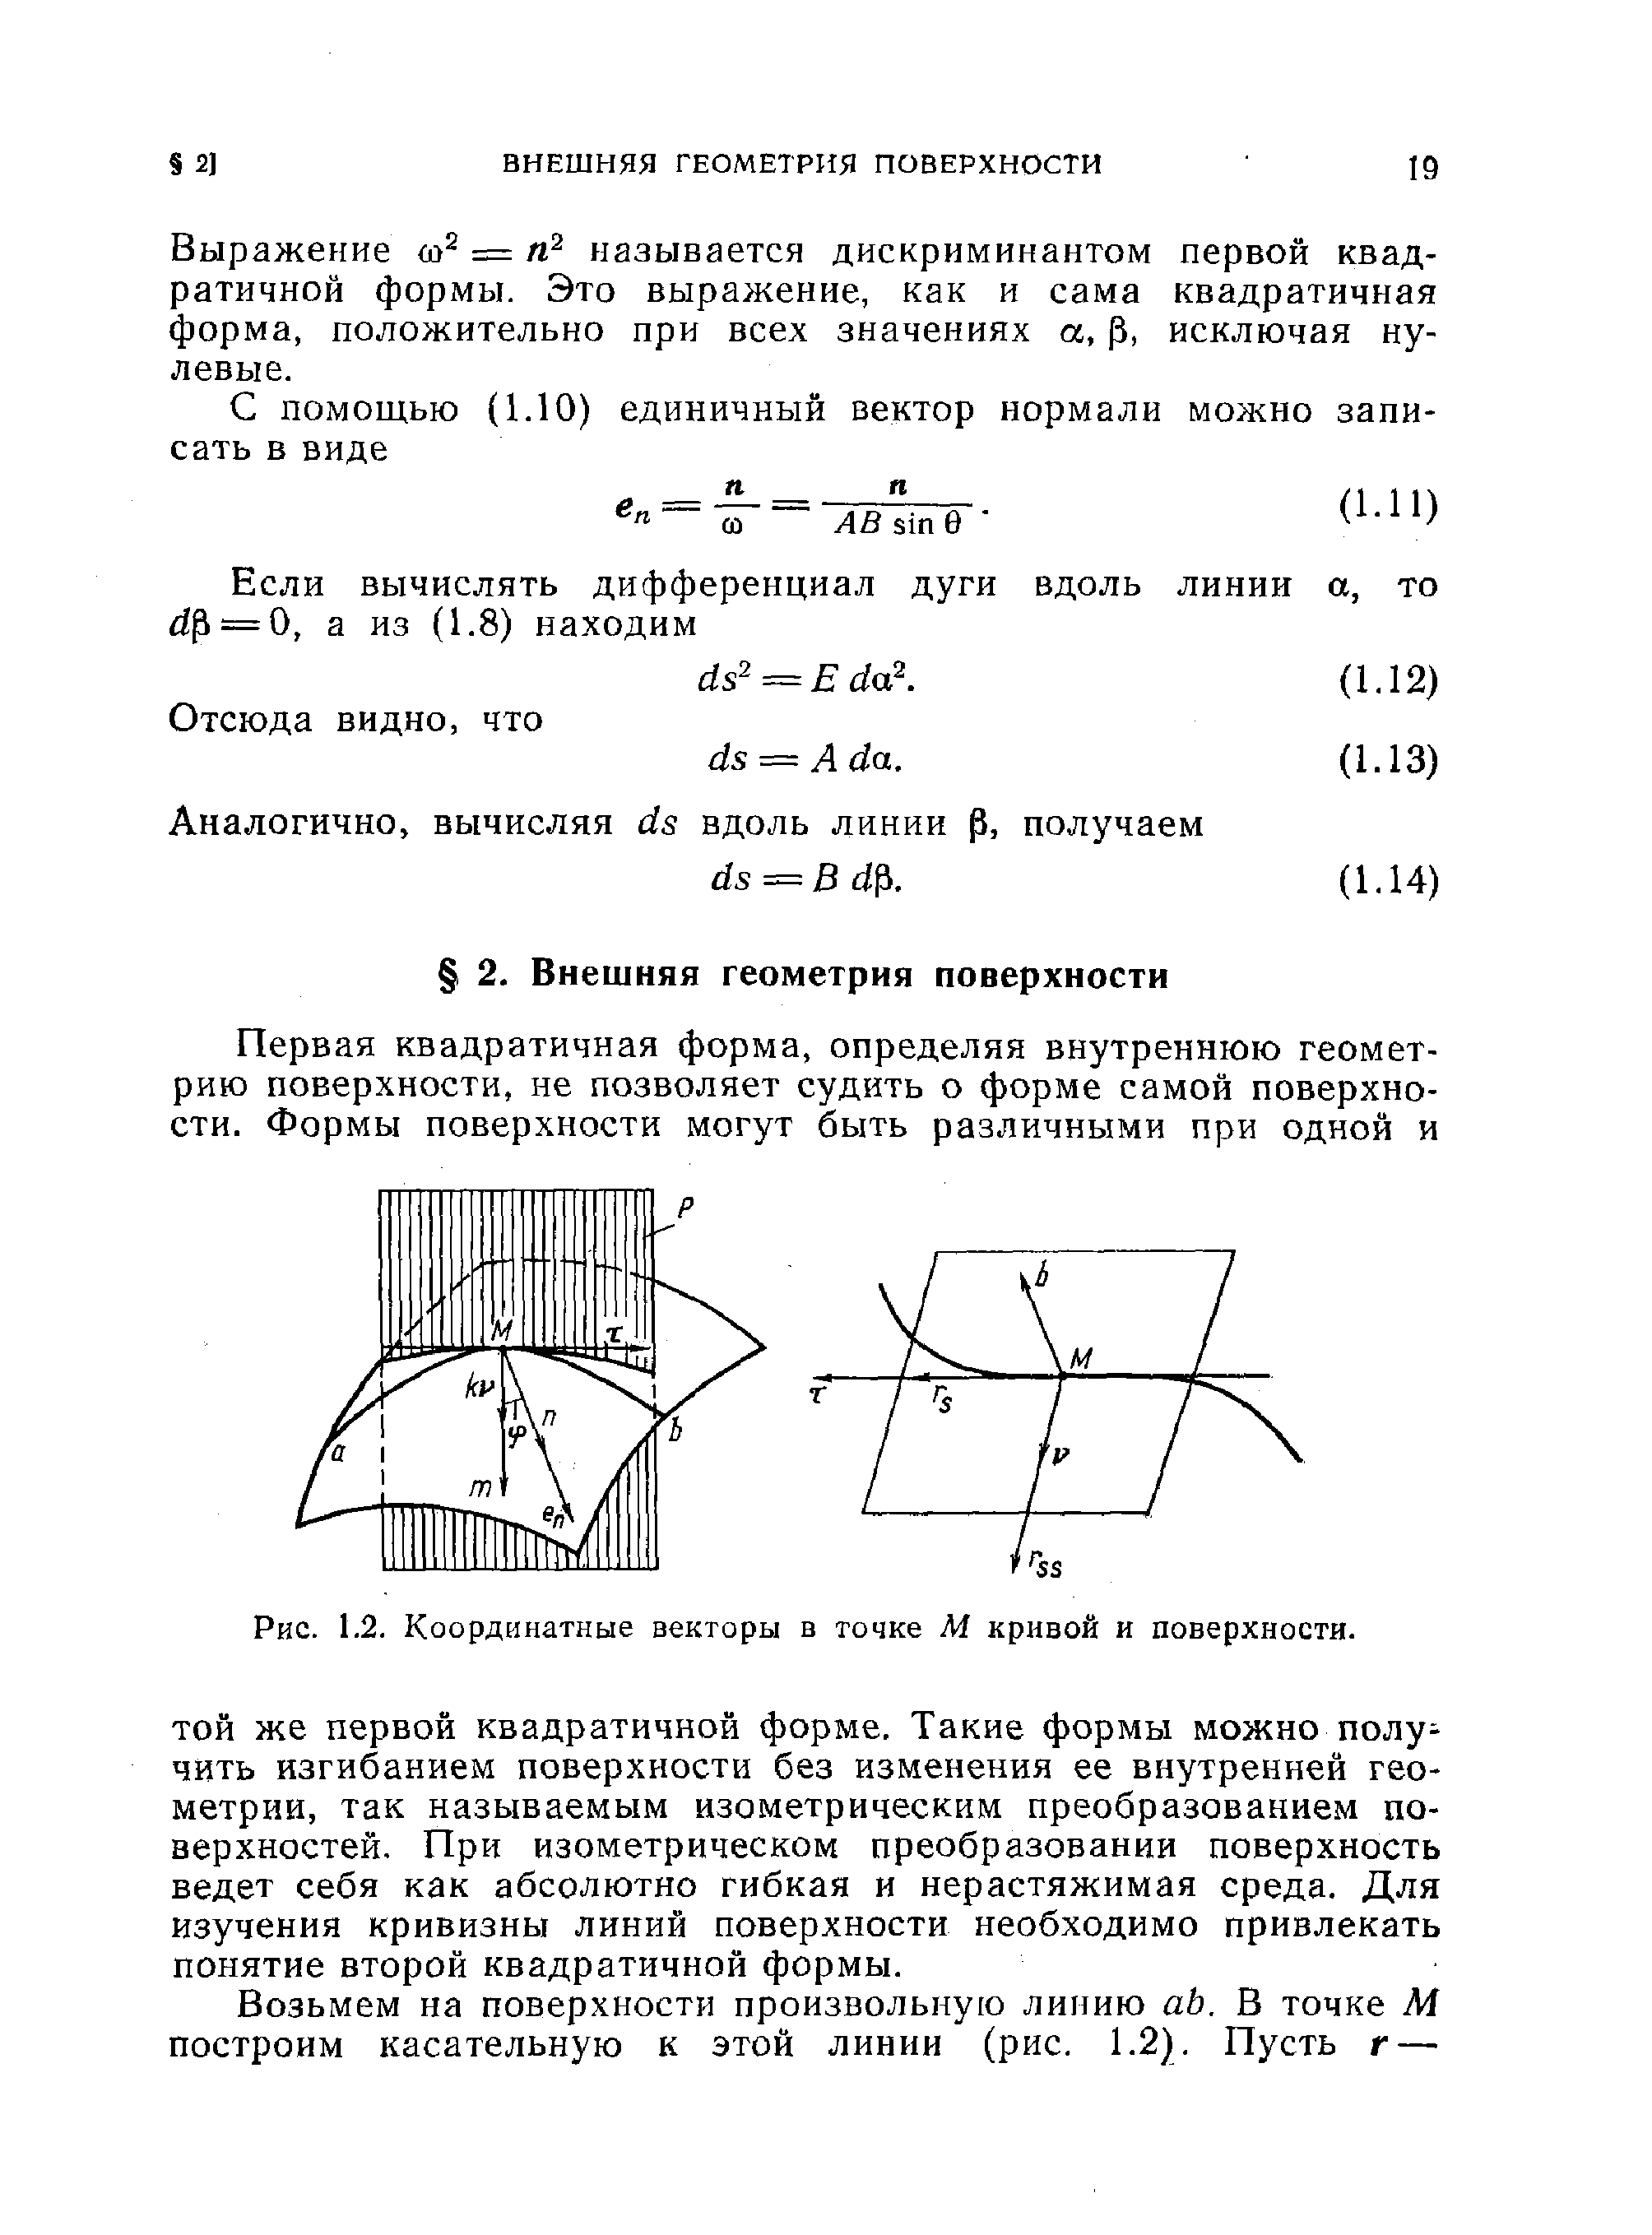 Рис. 1.2. Координатные векторы в точке М кривой и поверхности.
